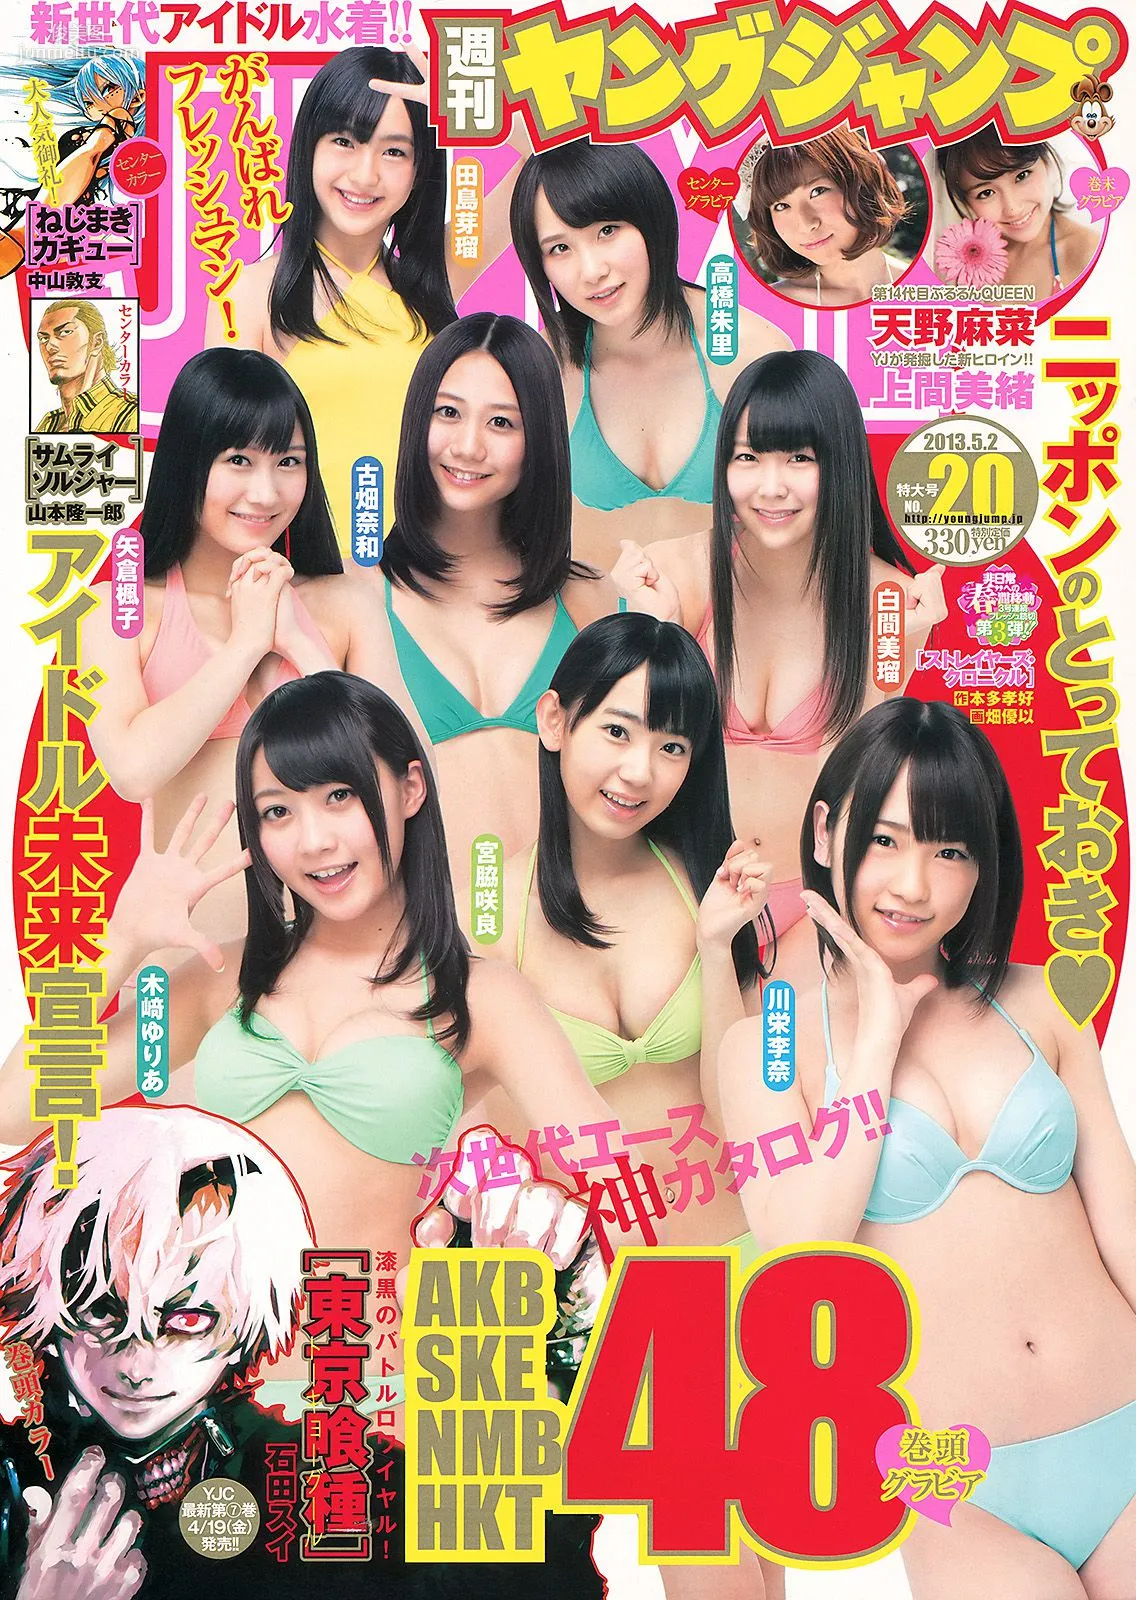 AKB48グループ 天野麻菜 上間美緒 [週刊ヤングジャンプ] 2013年No.20 写真杂志1